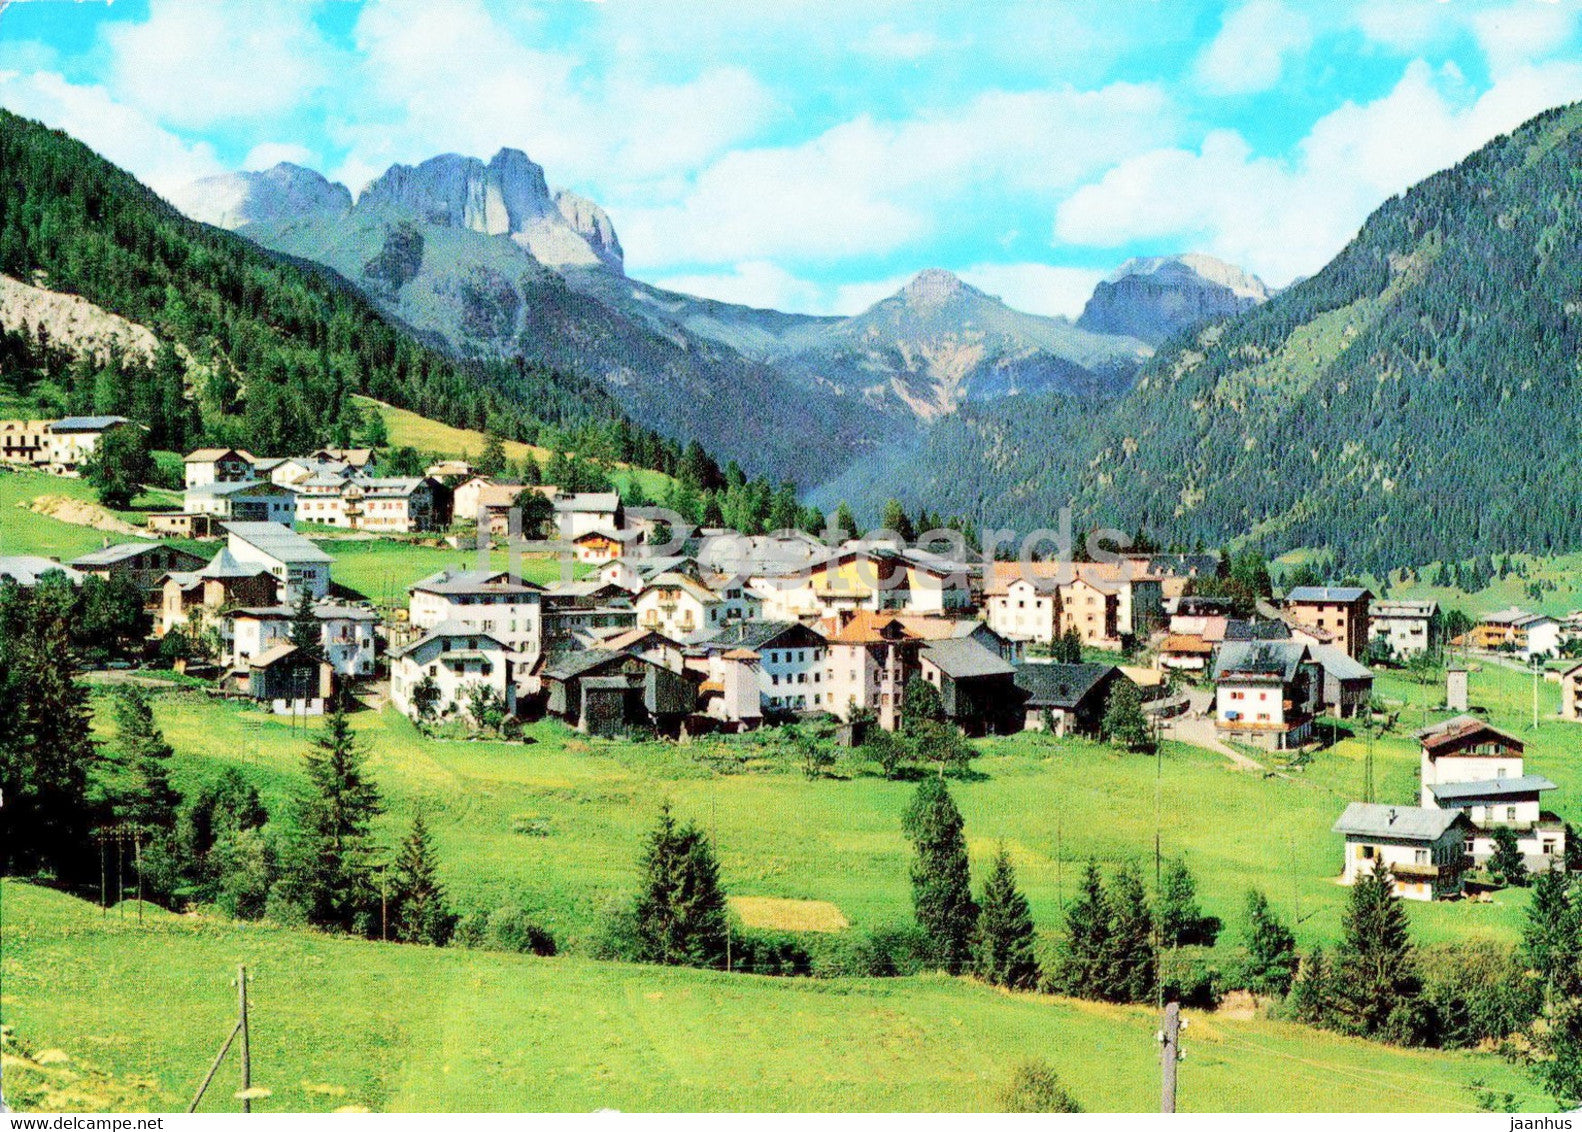 Vigo di Fassa - Panorama e veduta del Catinaccio Col Rodella e Gruppo Sella - Italy - unused - JH Postcards